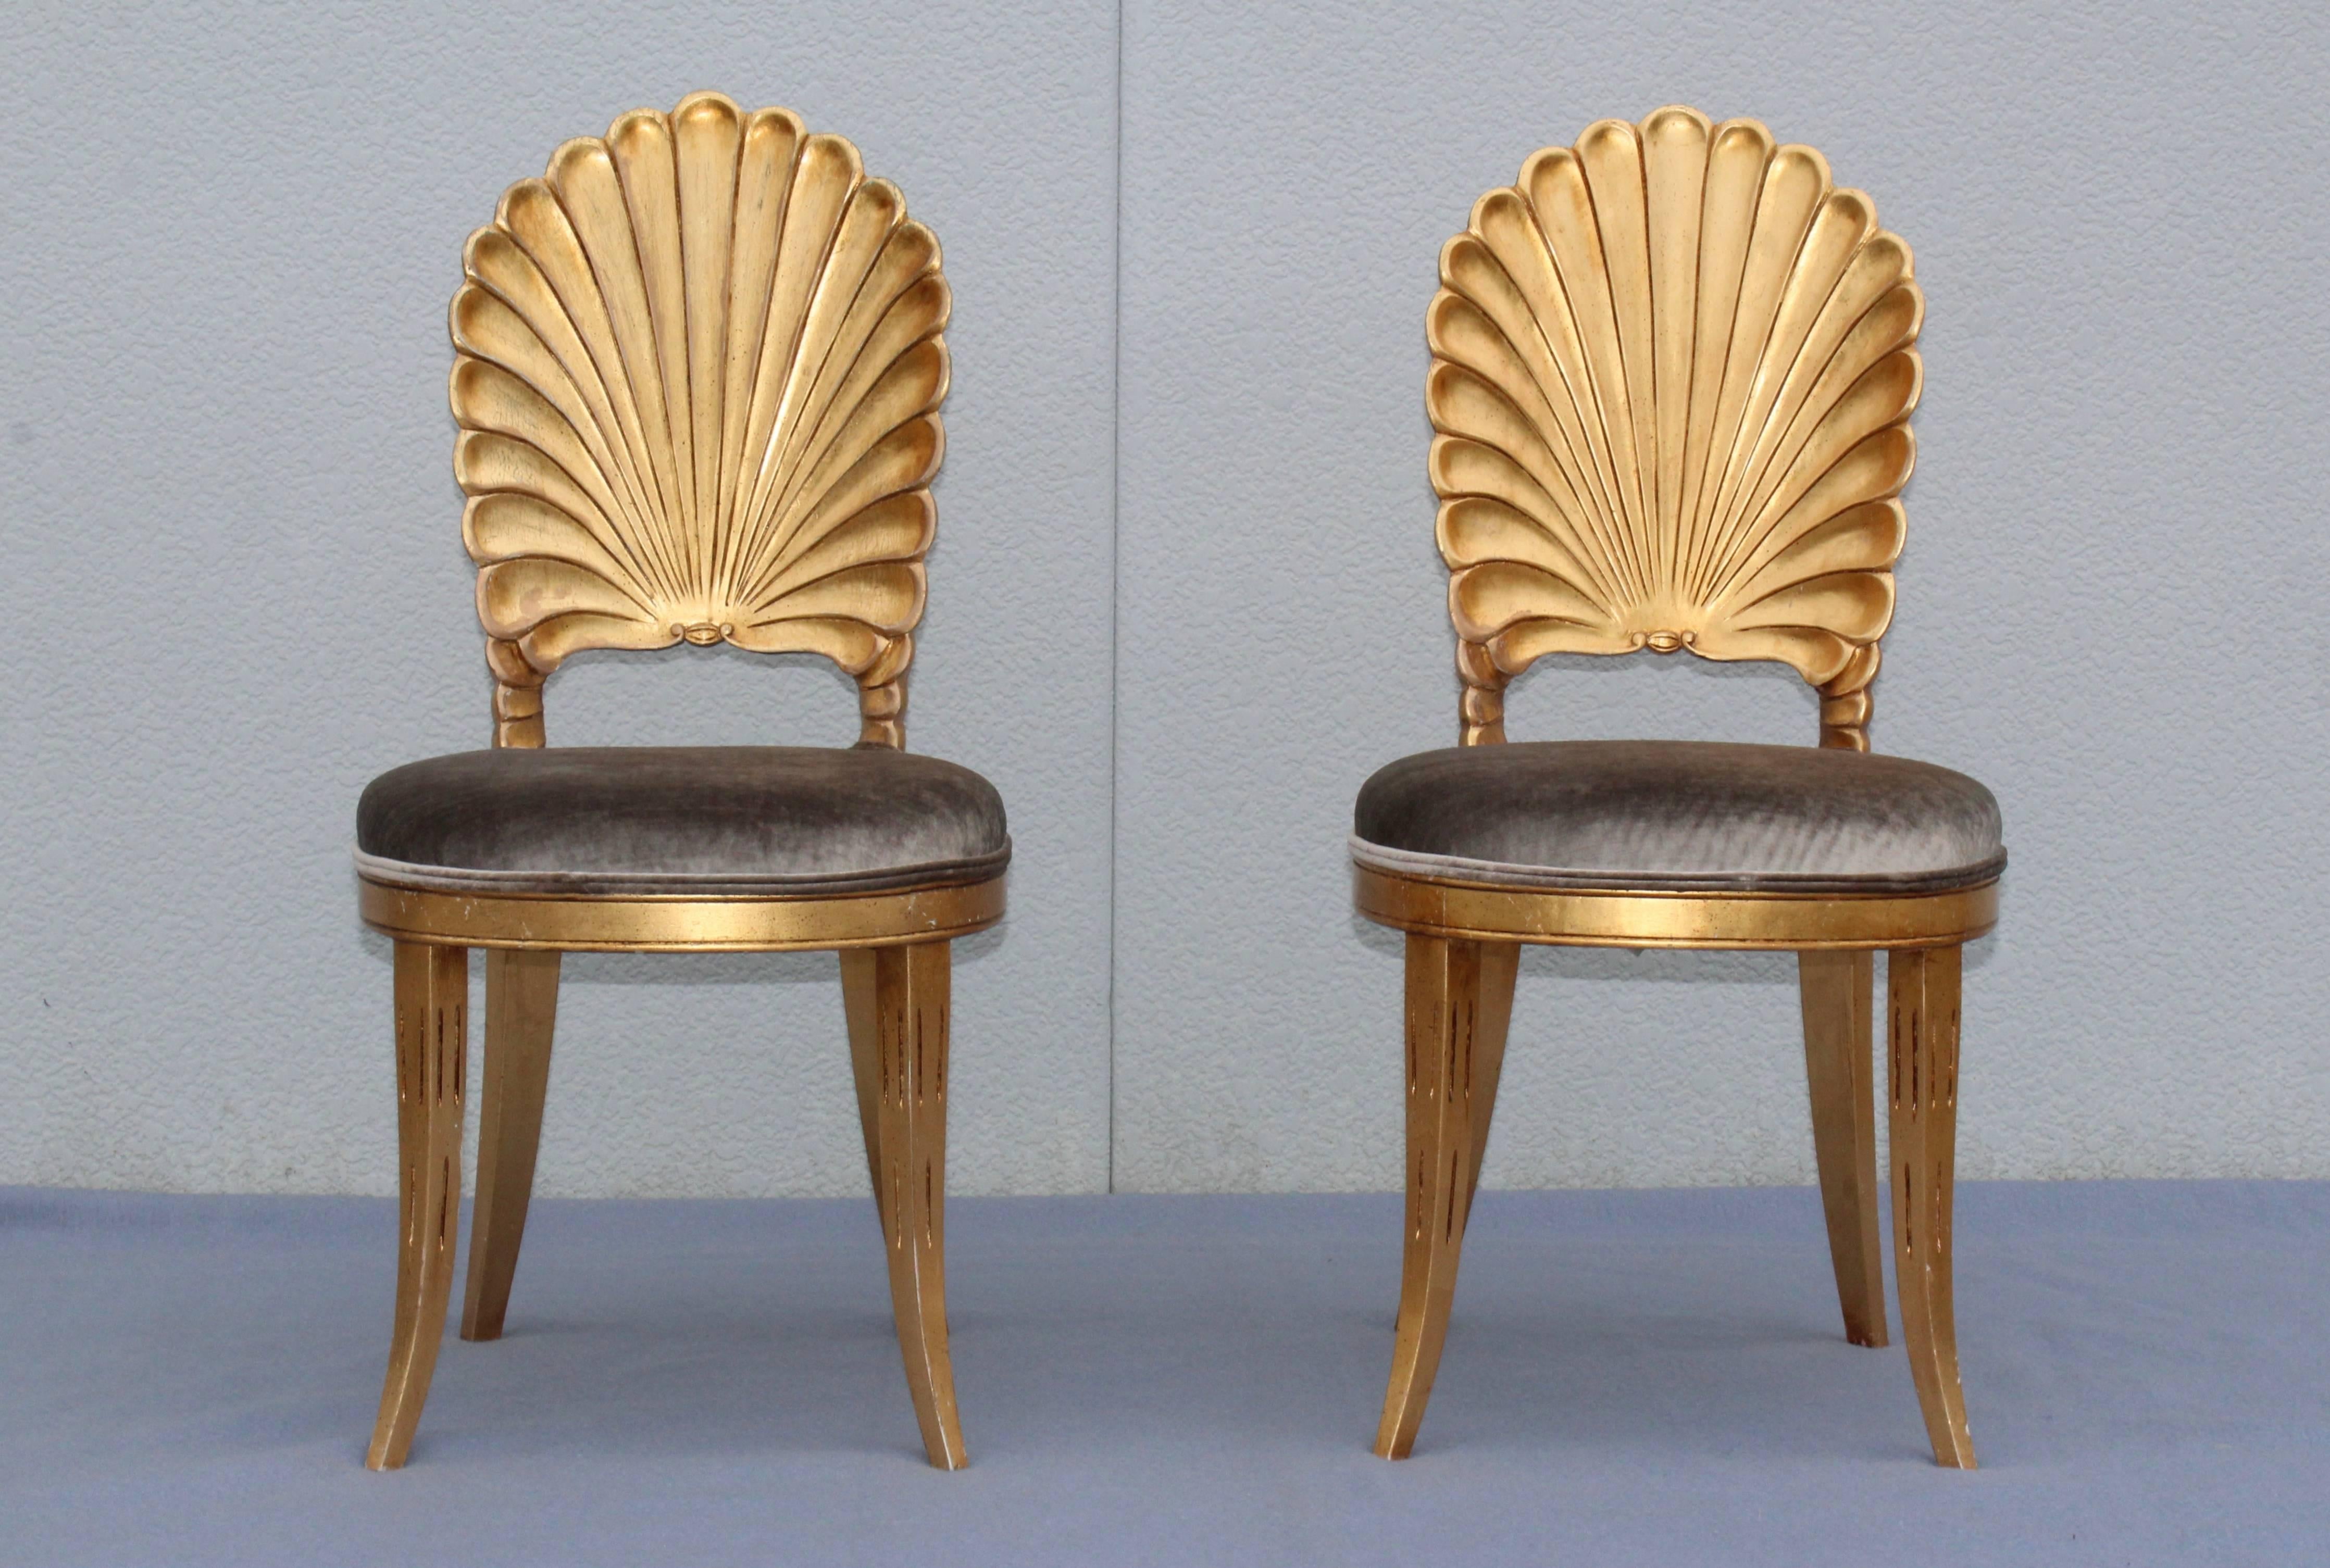 shellback chairs